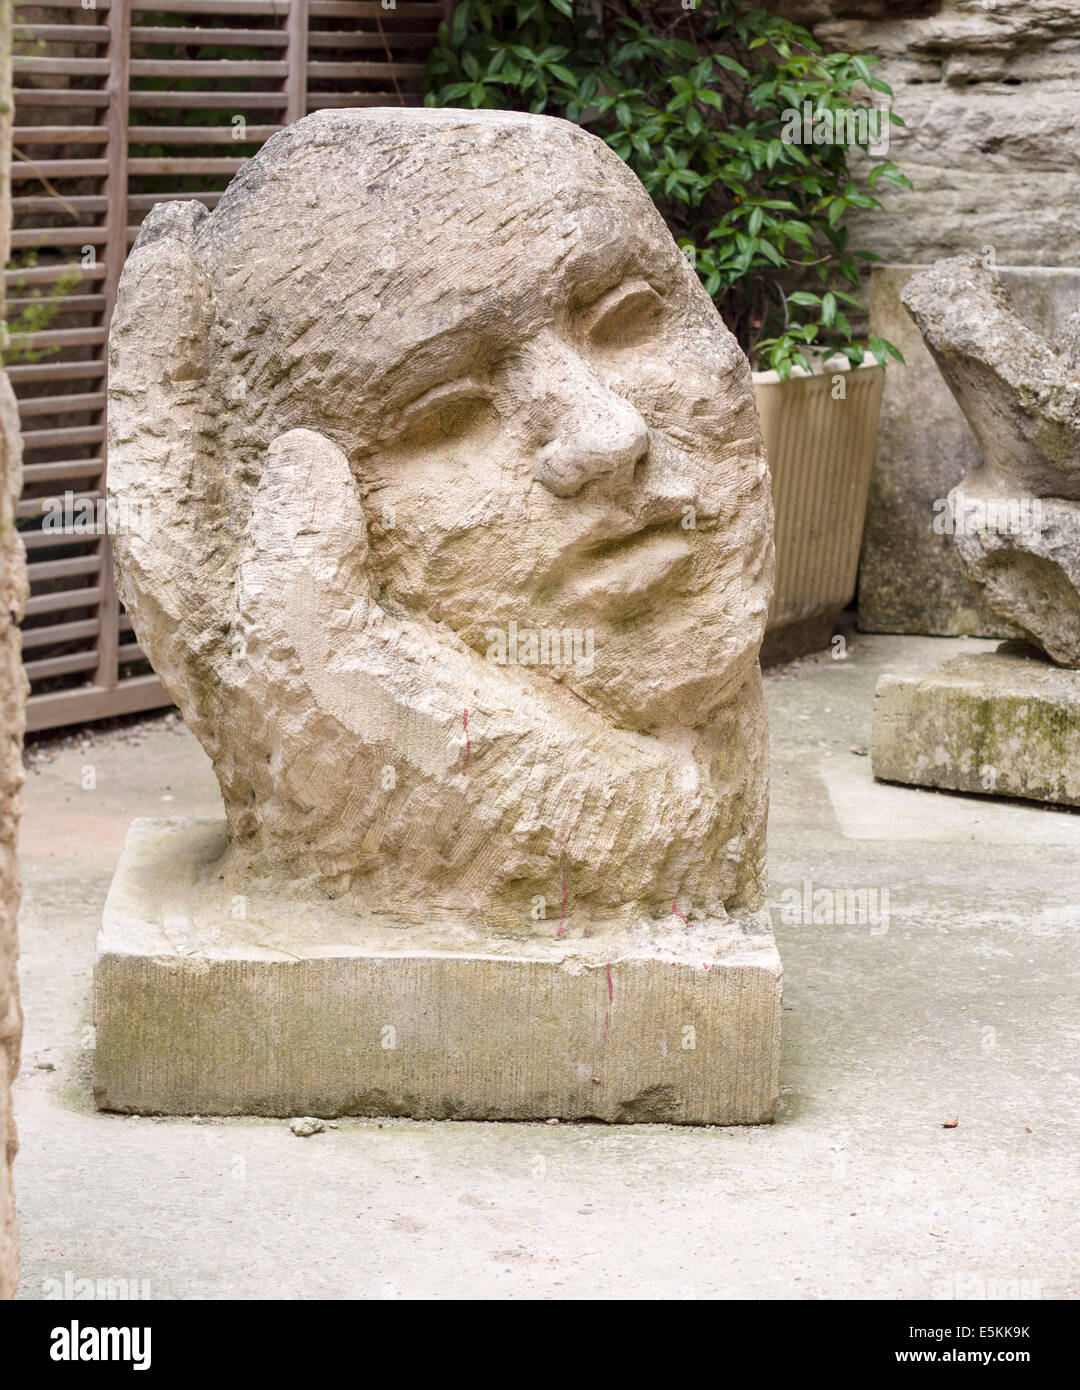 Neue Kunst: Hand und Kopf-Skulptur. Ein großer Block aus Stein gemeißelt  vor kurzem in eine große Hand wiegte den Kopf Stockfotografie - Alamy